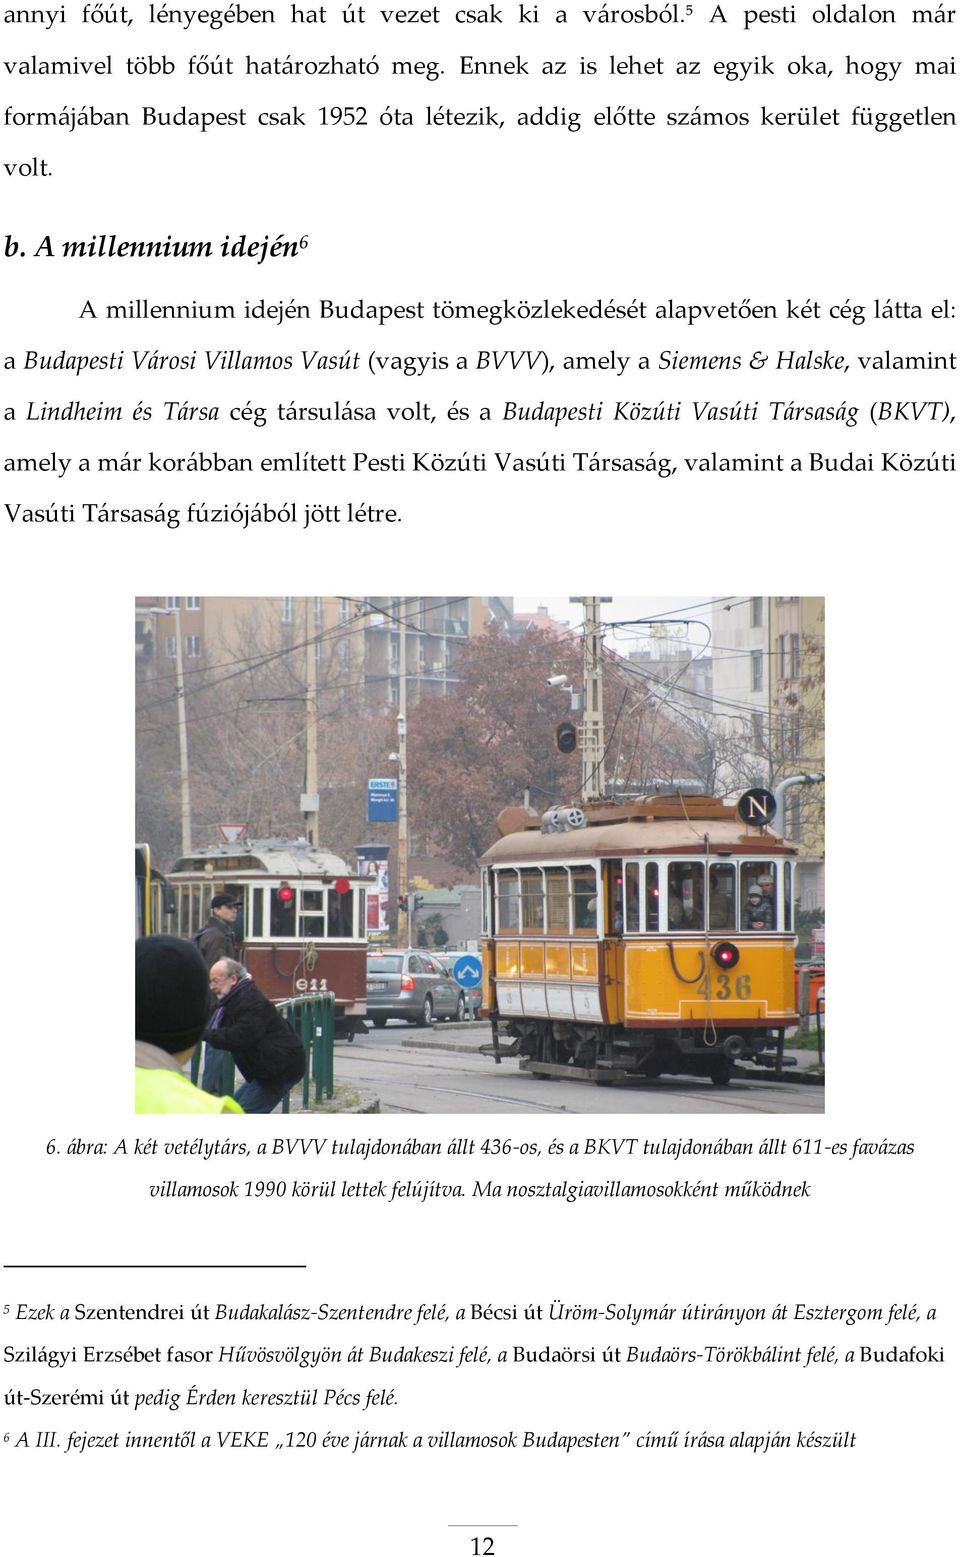 A millennium idején 6 A millennium idején Budapest tömegközlekedését alapvetően két cég látta el: a Budapesti Városi Villamos Vasút (vagyis a BVVV), amely a Siemens & Halske, valamint a Lindheim és